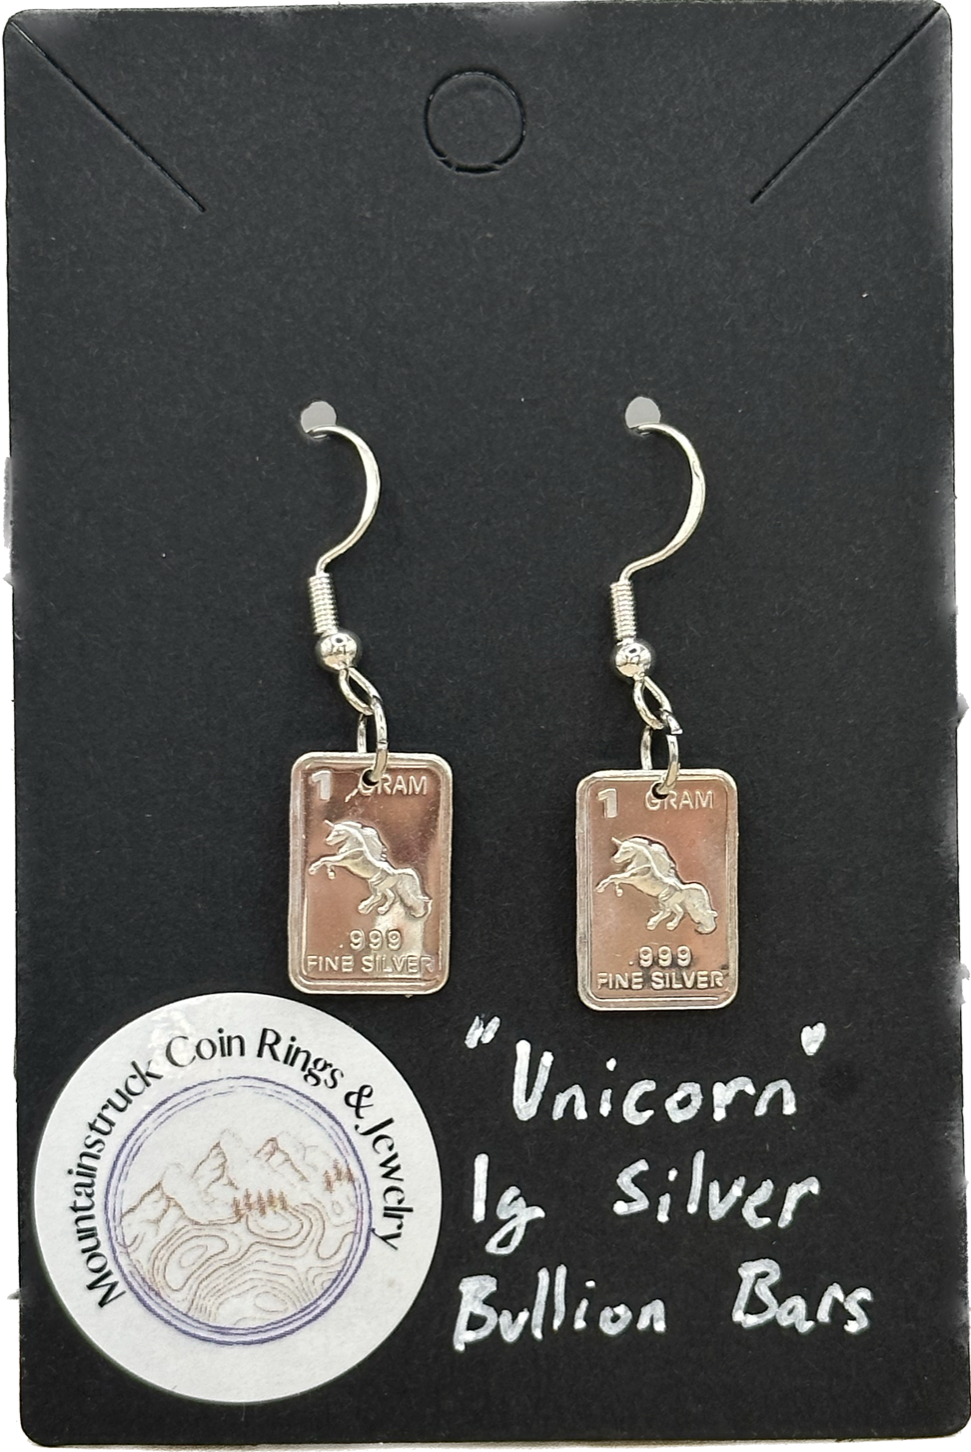 Unicorn 1g Bullion Silver Earrings